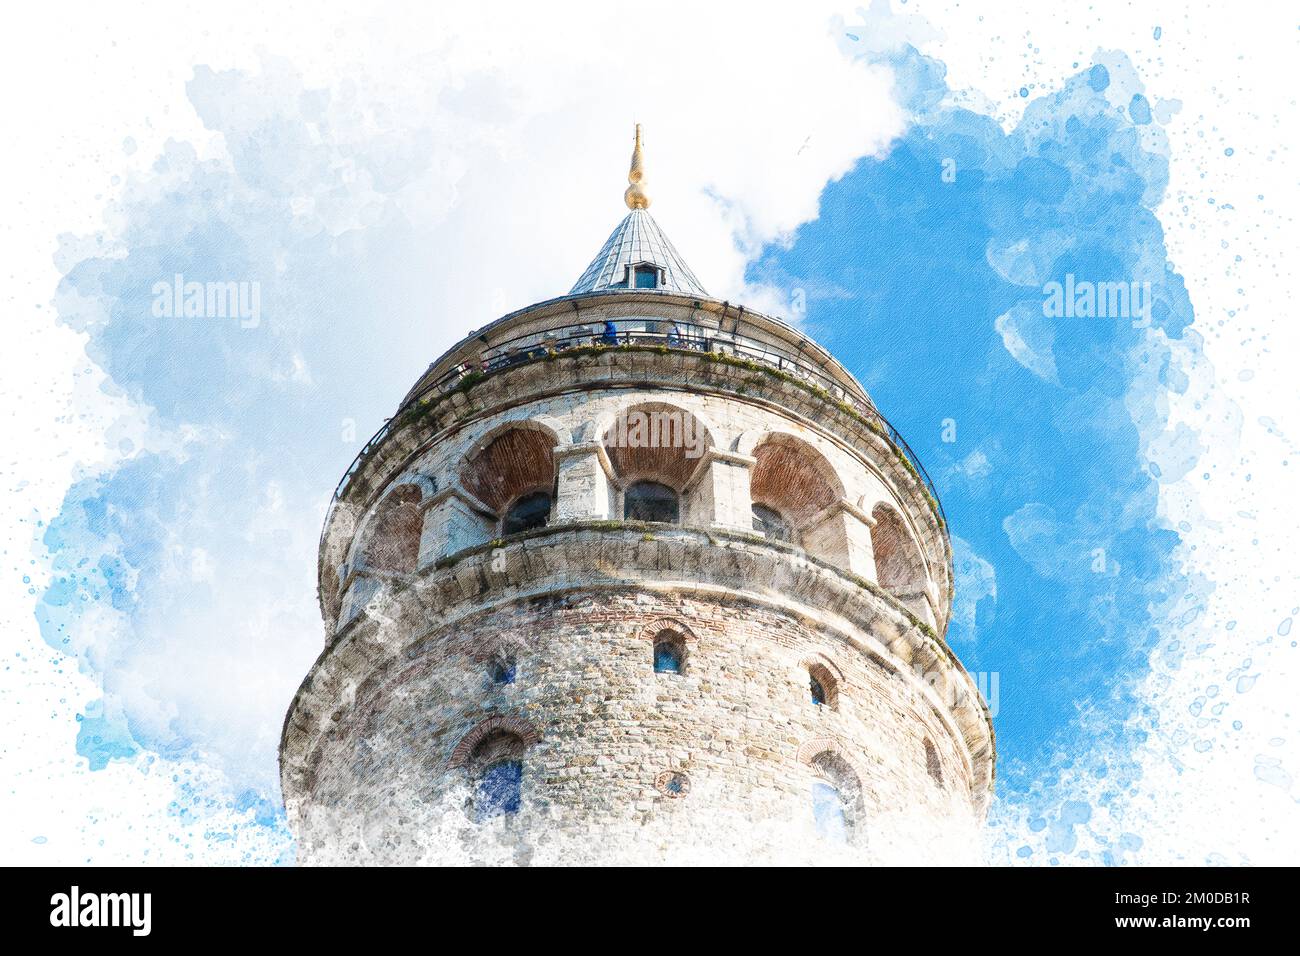 Aquarell-Darstellung des Galataturms in Istanbul Türkei. Reise in die türkei. Touristische Orte in der Türkei Stockfoto